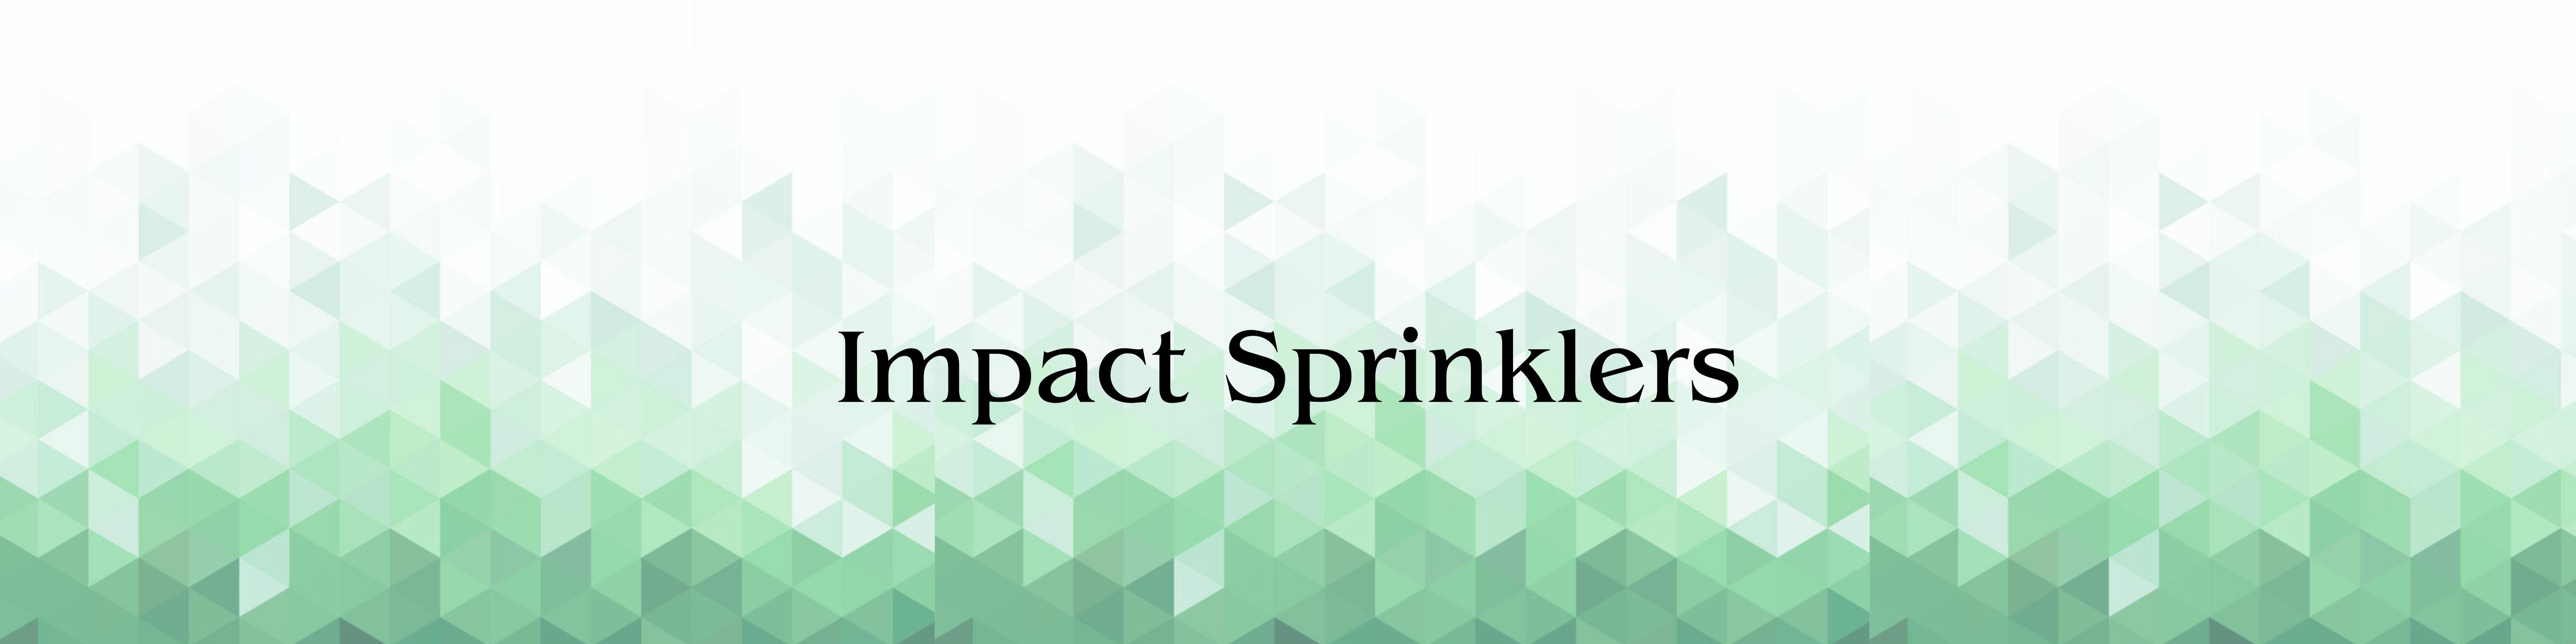 LANDSCAPE-IMPACT-SPINKLERS